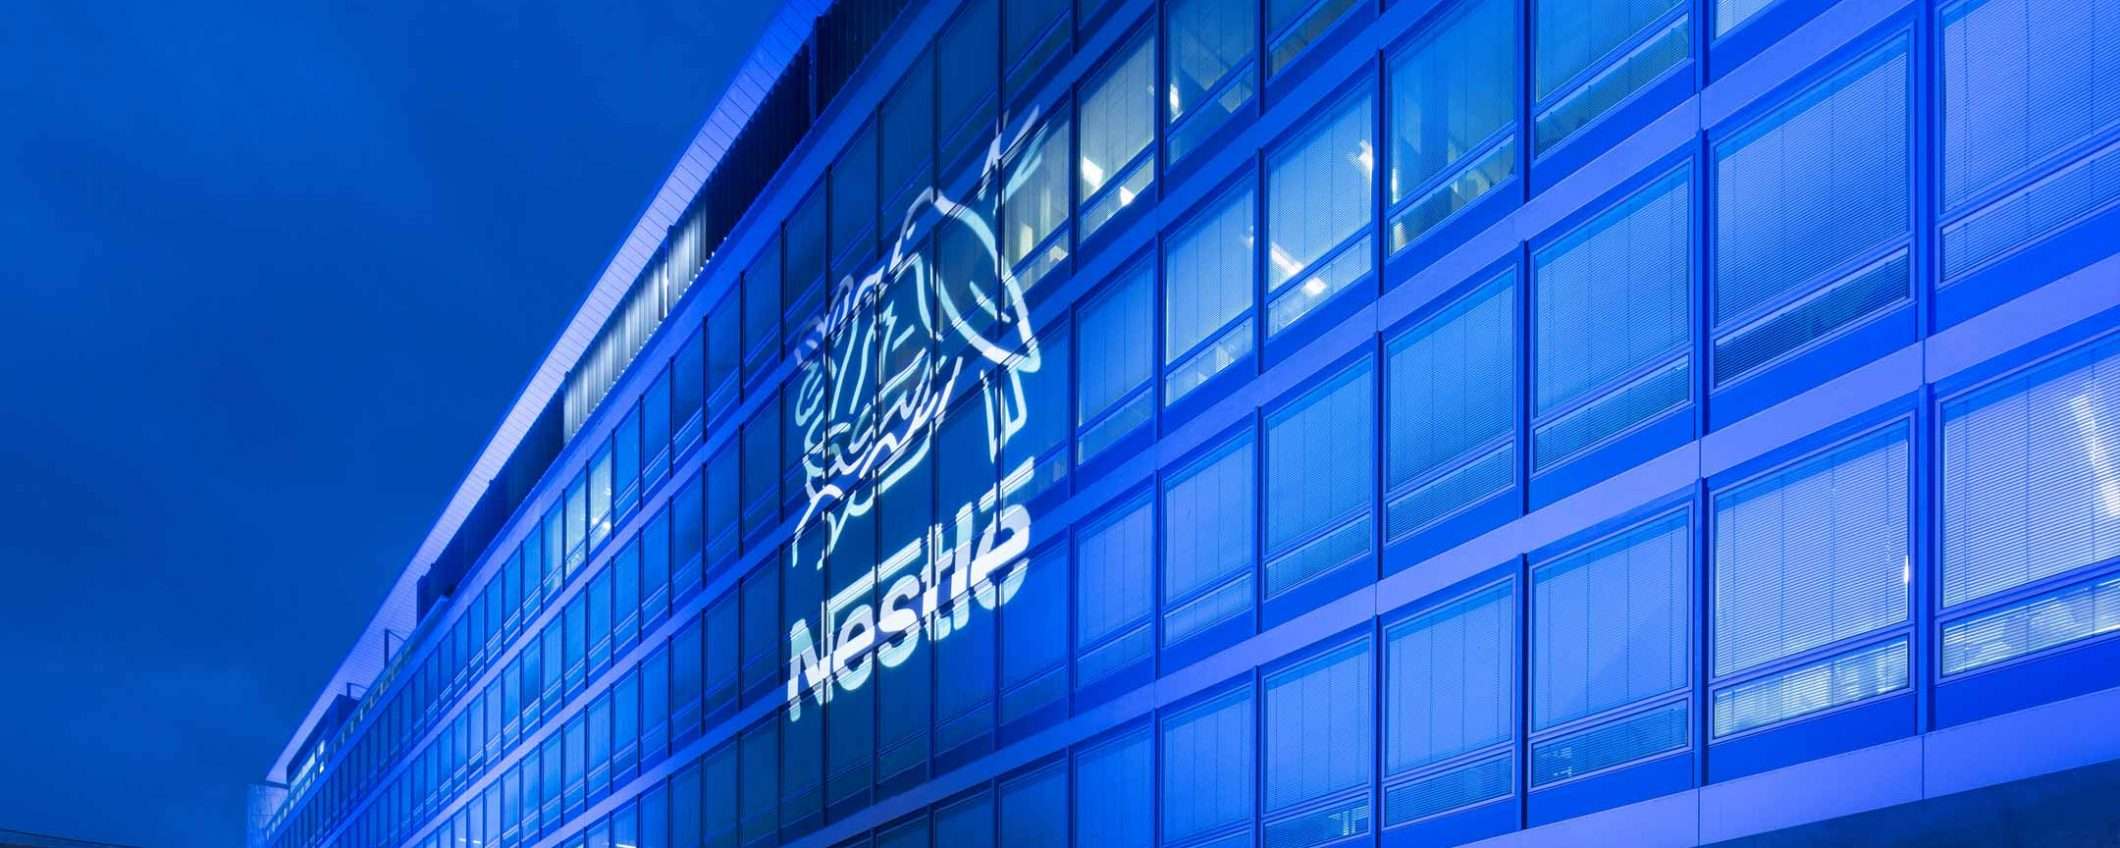 Nestlé: una blockchain per latte e olio di palma